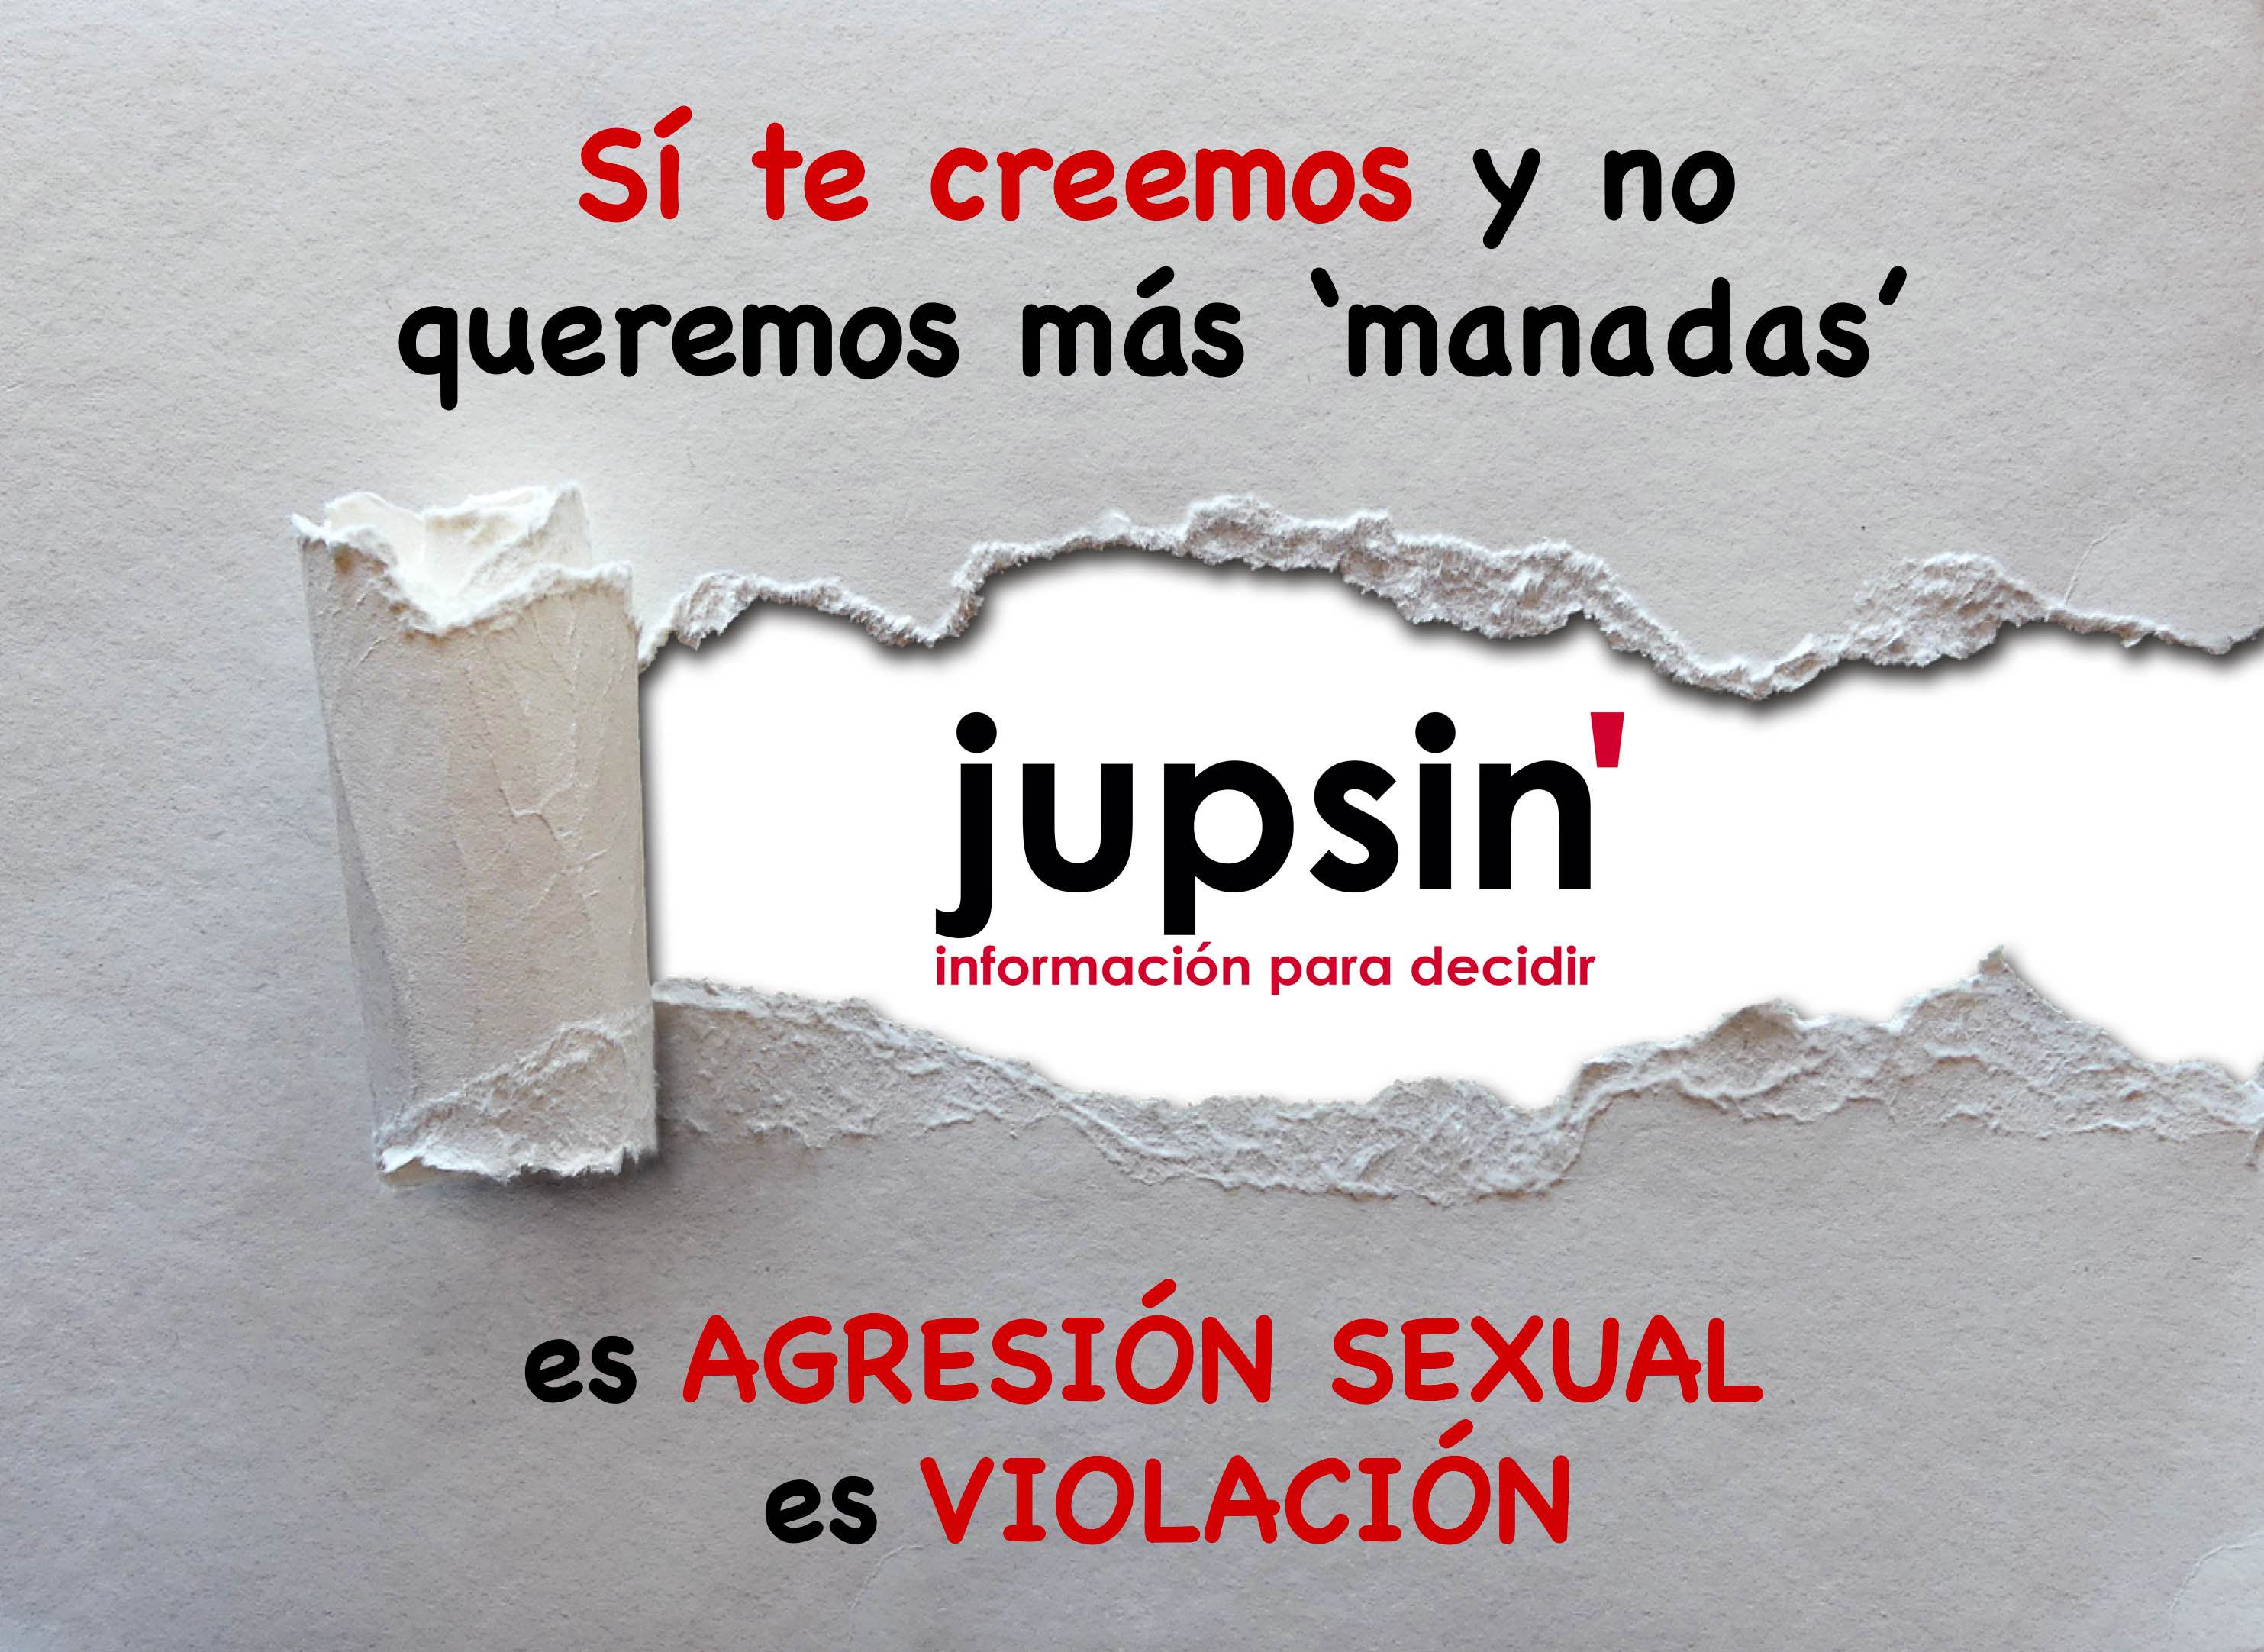 jupsin.com, La Manada, sentencia, violación, agresión sexual